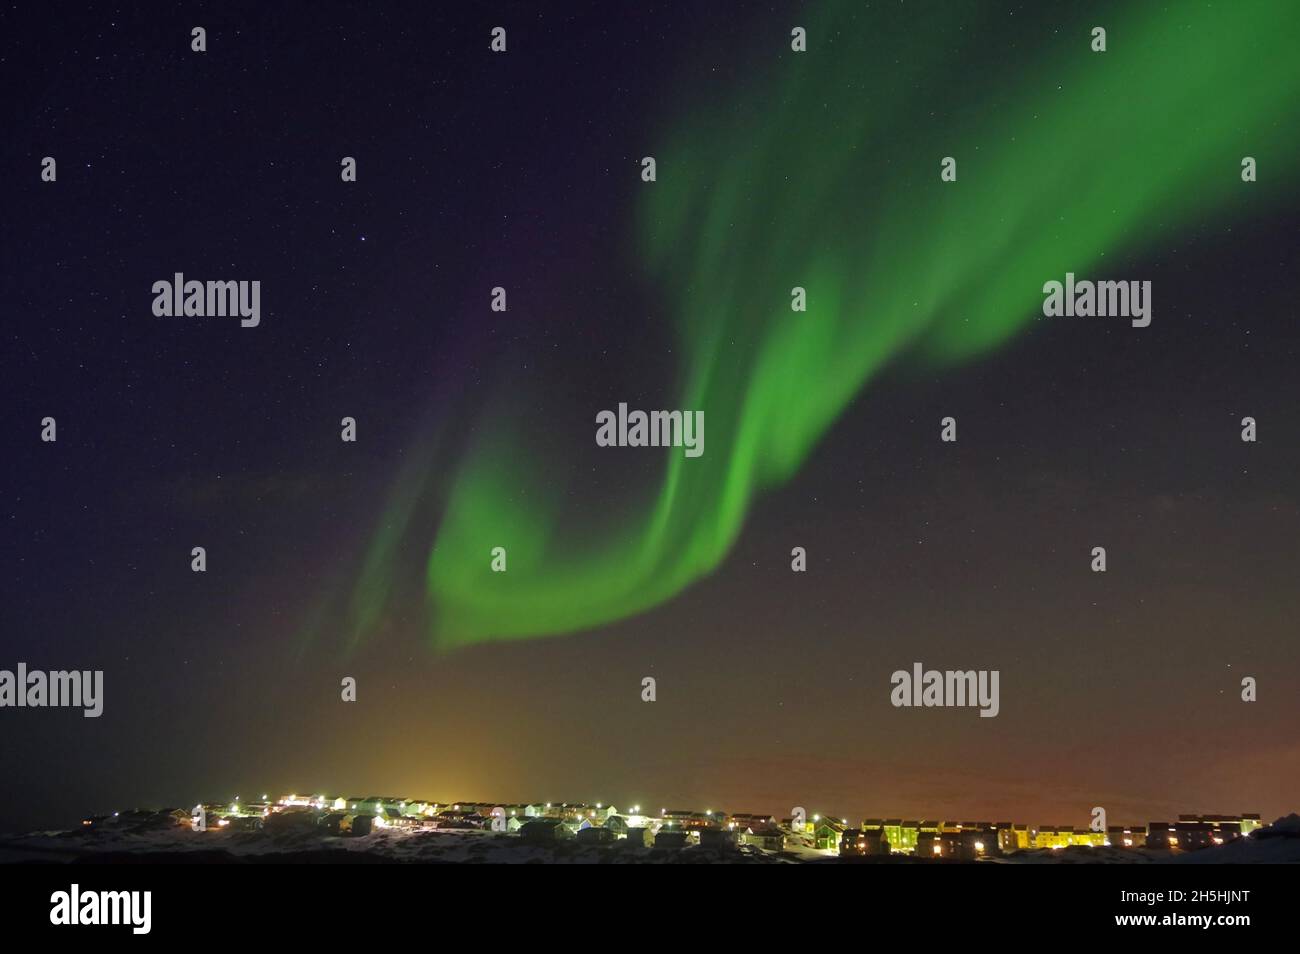 aurores boréales (aurora borealis) au-dessus de maisons, capitale, Arctique, Amérique du Nord, Nuuk,Groenland, Danemark Banque D'Images